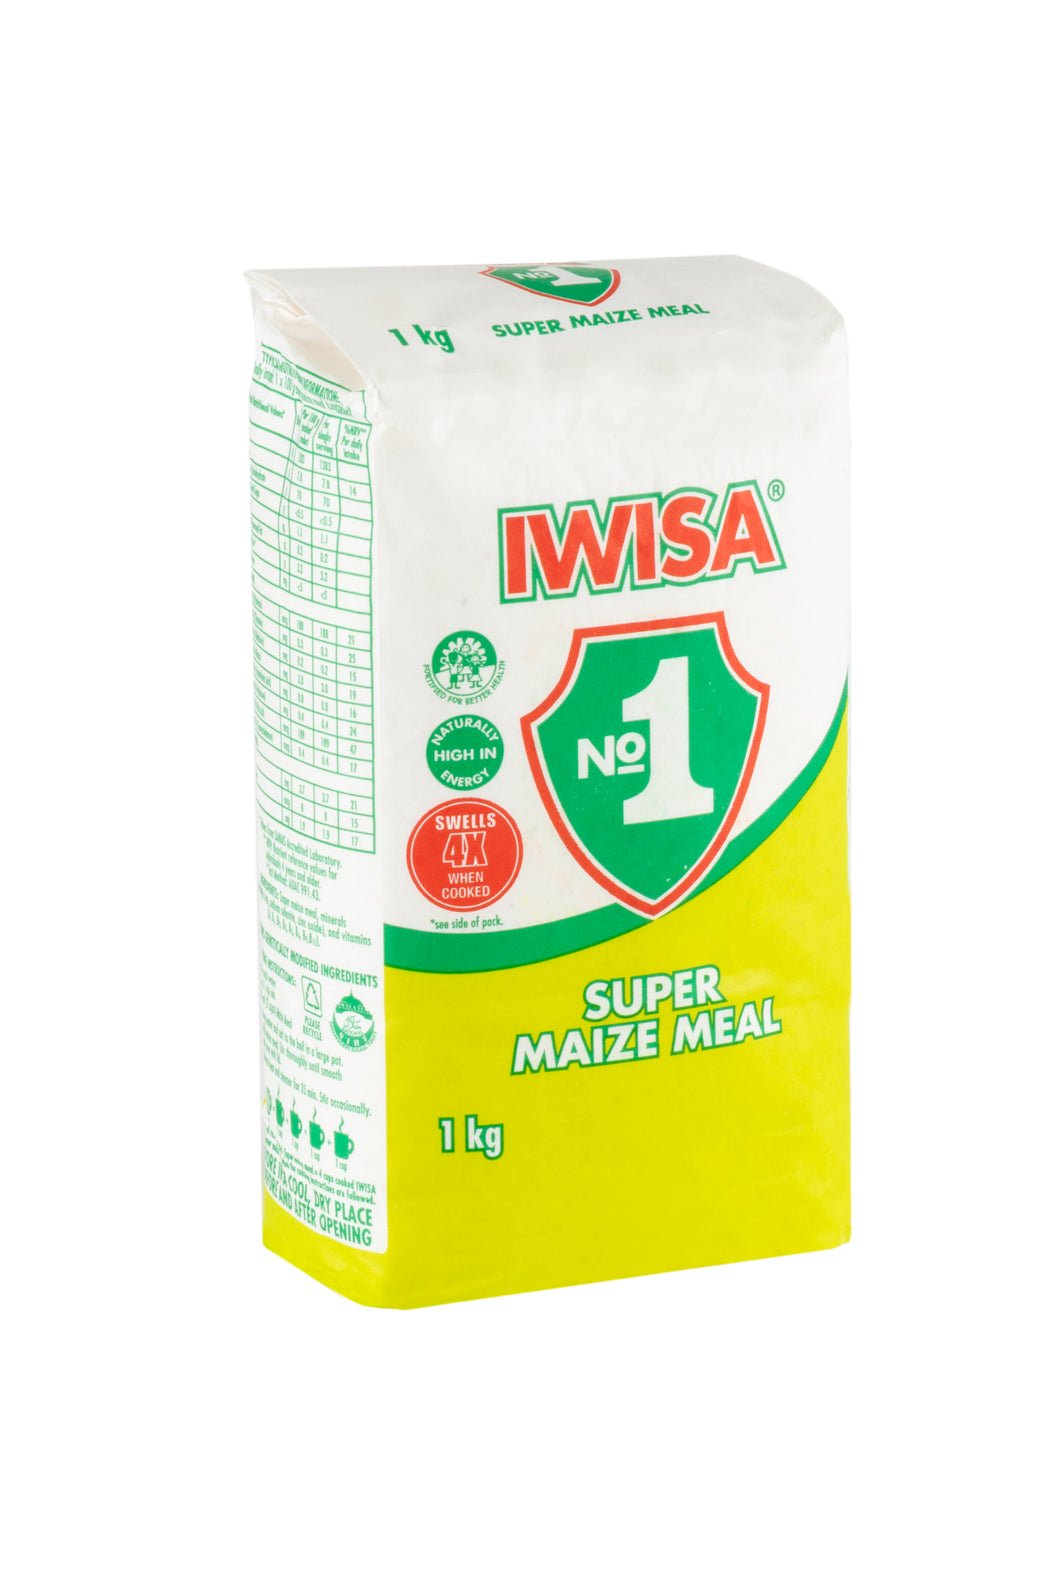 IWISA Maize Meal